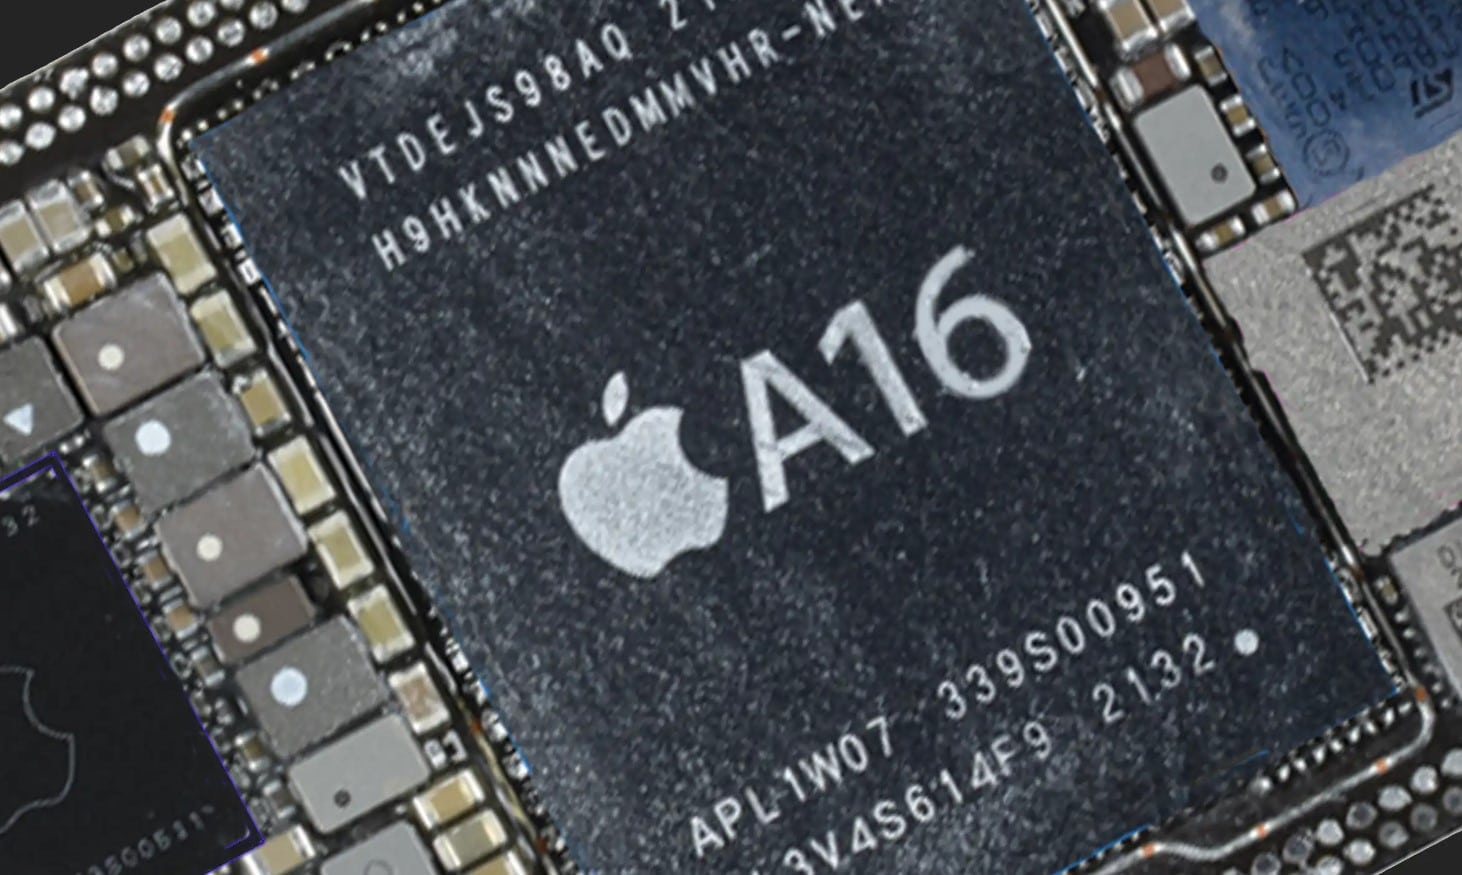 A16 chipset